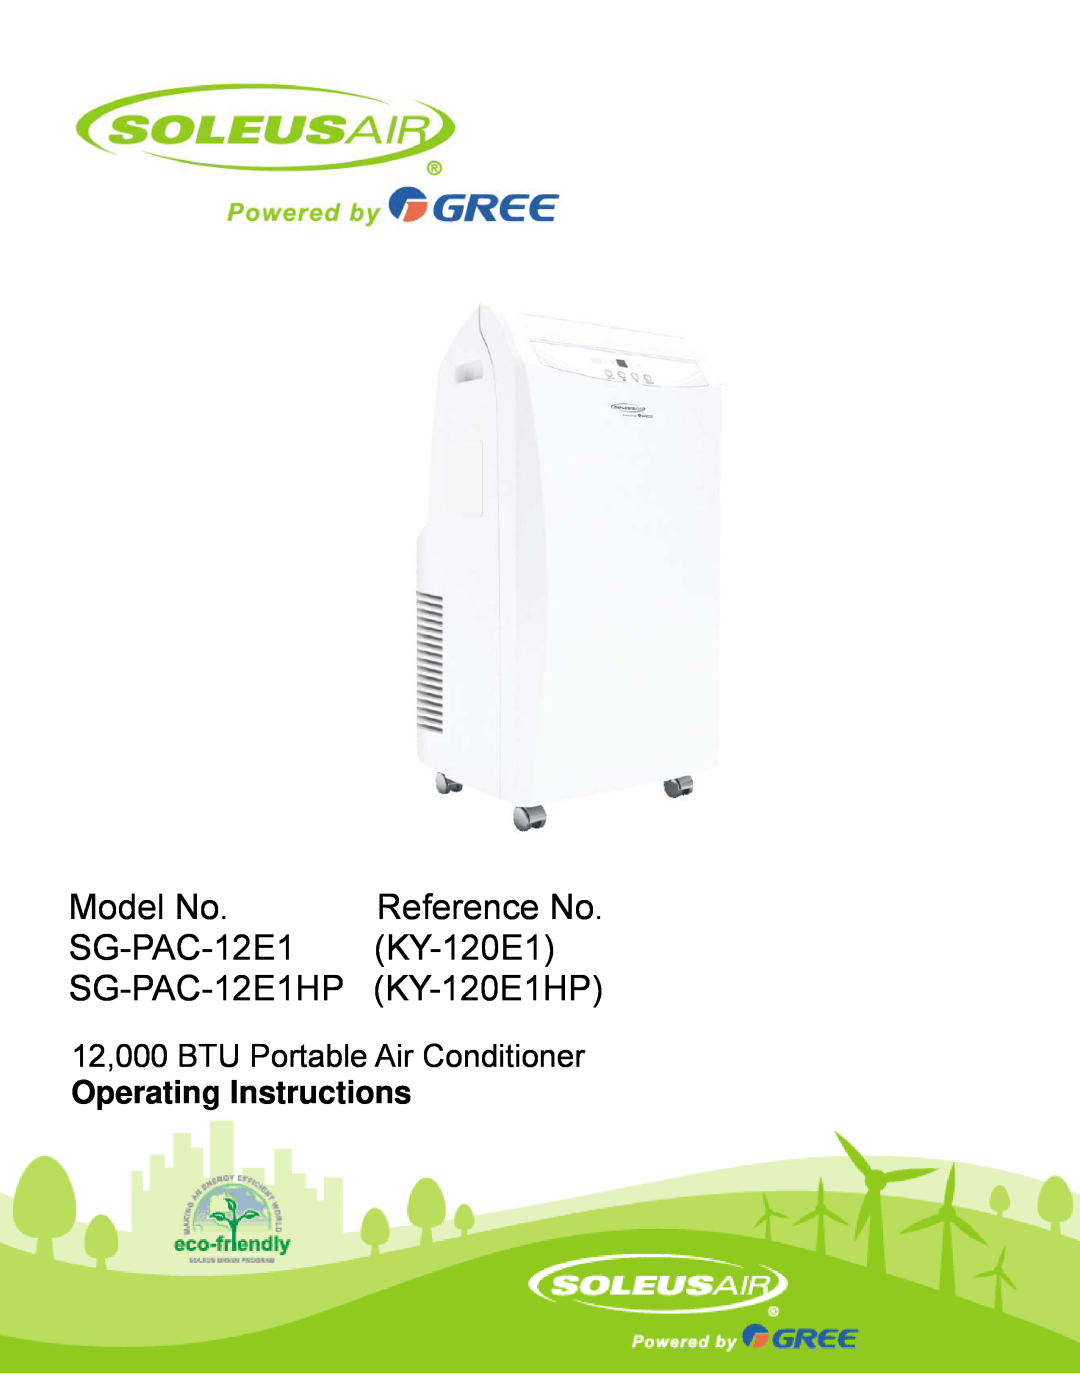 Soleus Air manual Model No, SG-PAC-12E1HP KY-120E1HP, Reference No, 12,000 BTU Portable Air Conditioner 